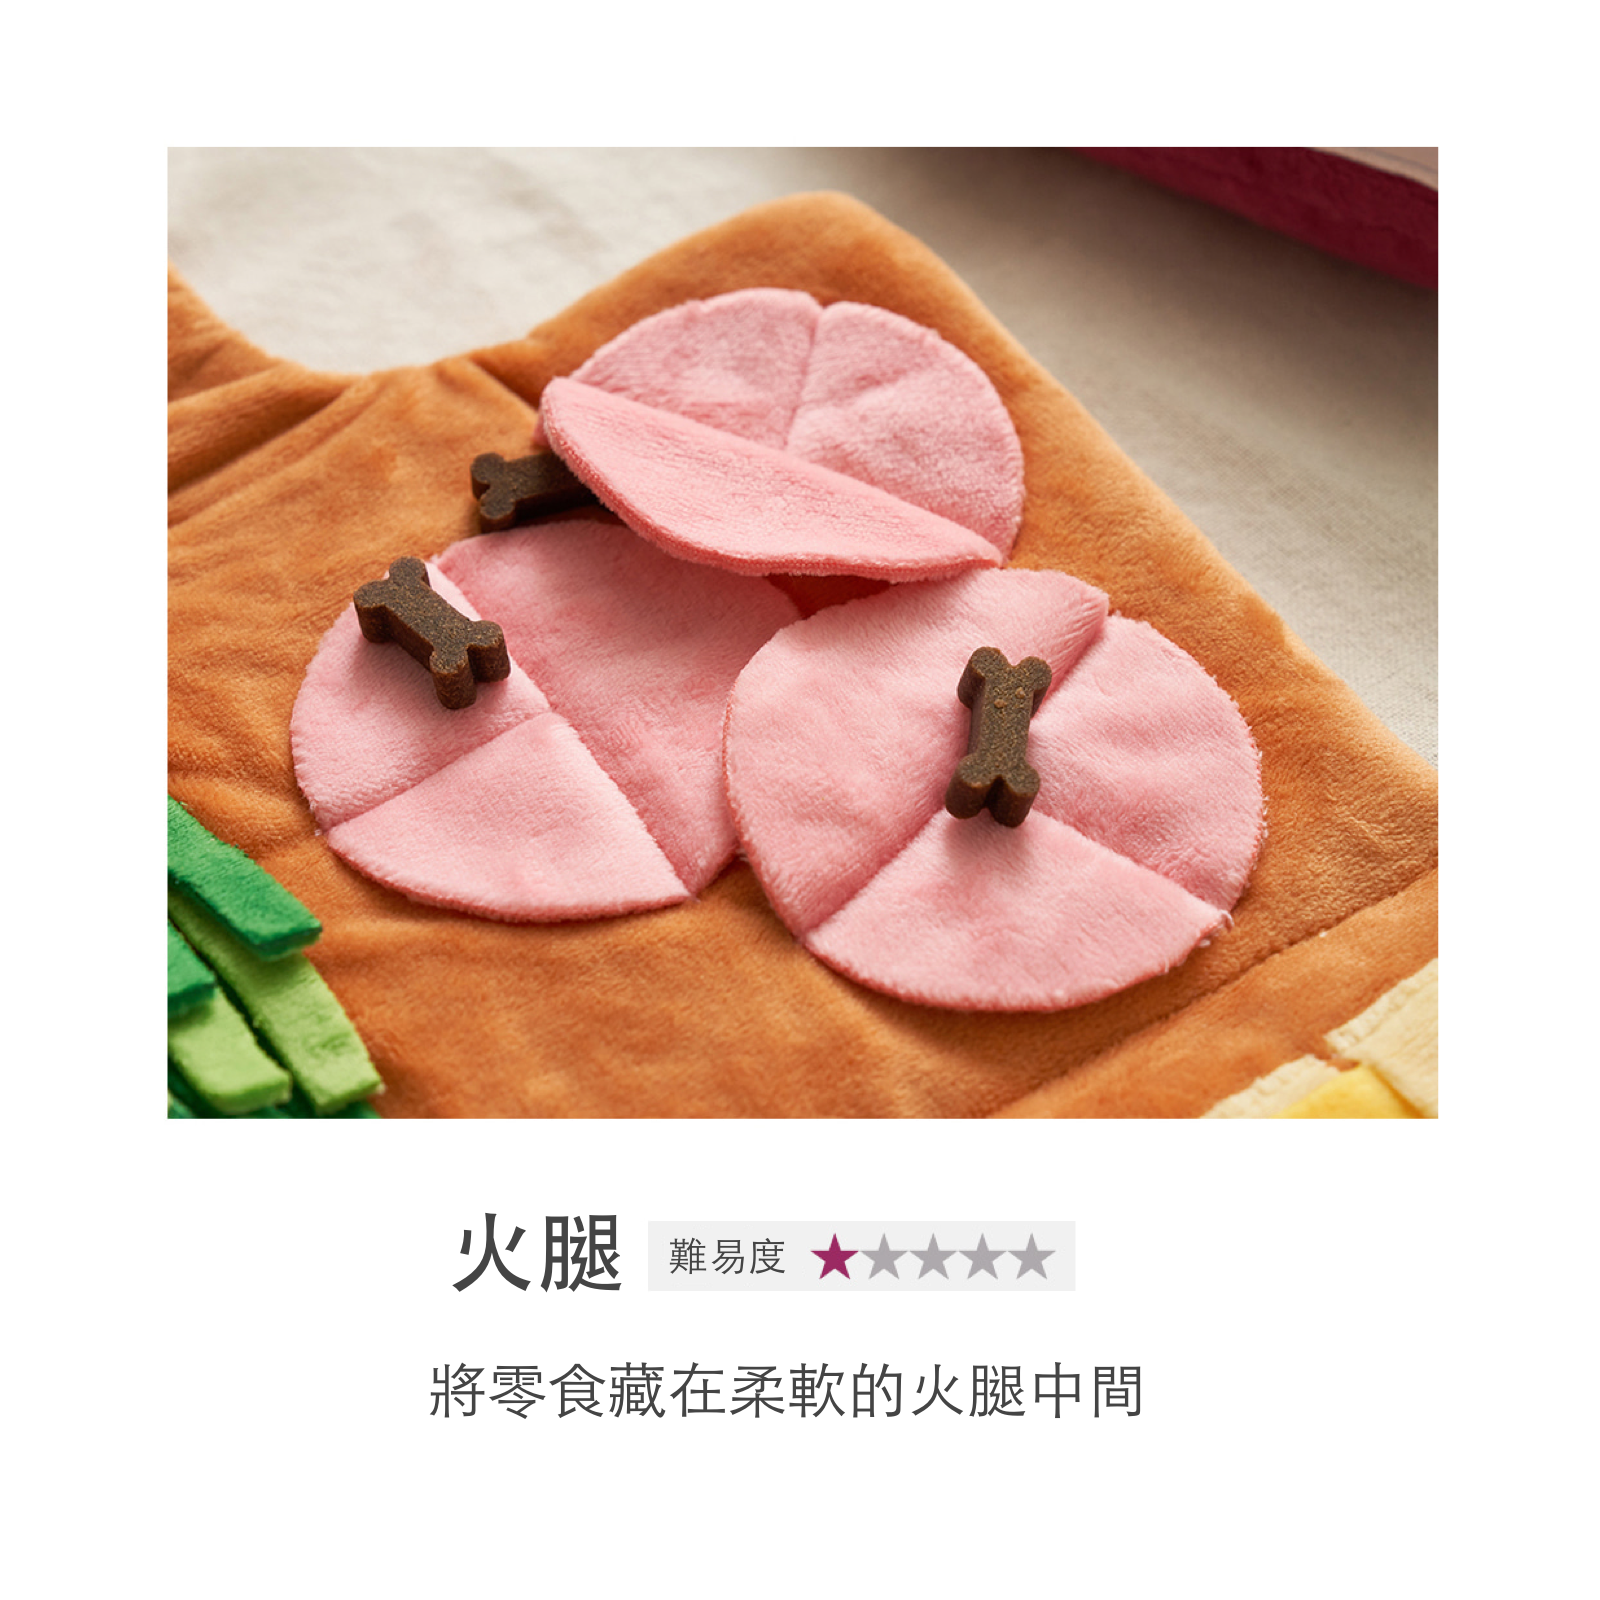 韓國 likalika 菜單造型藏食貓狗玩具